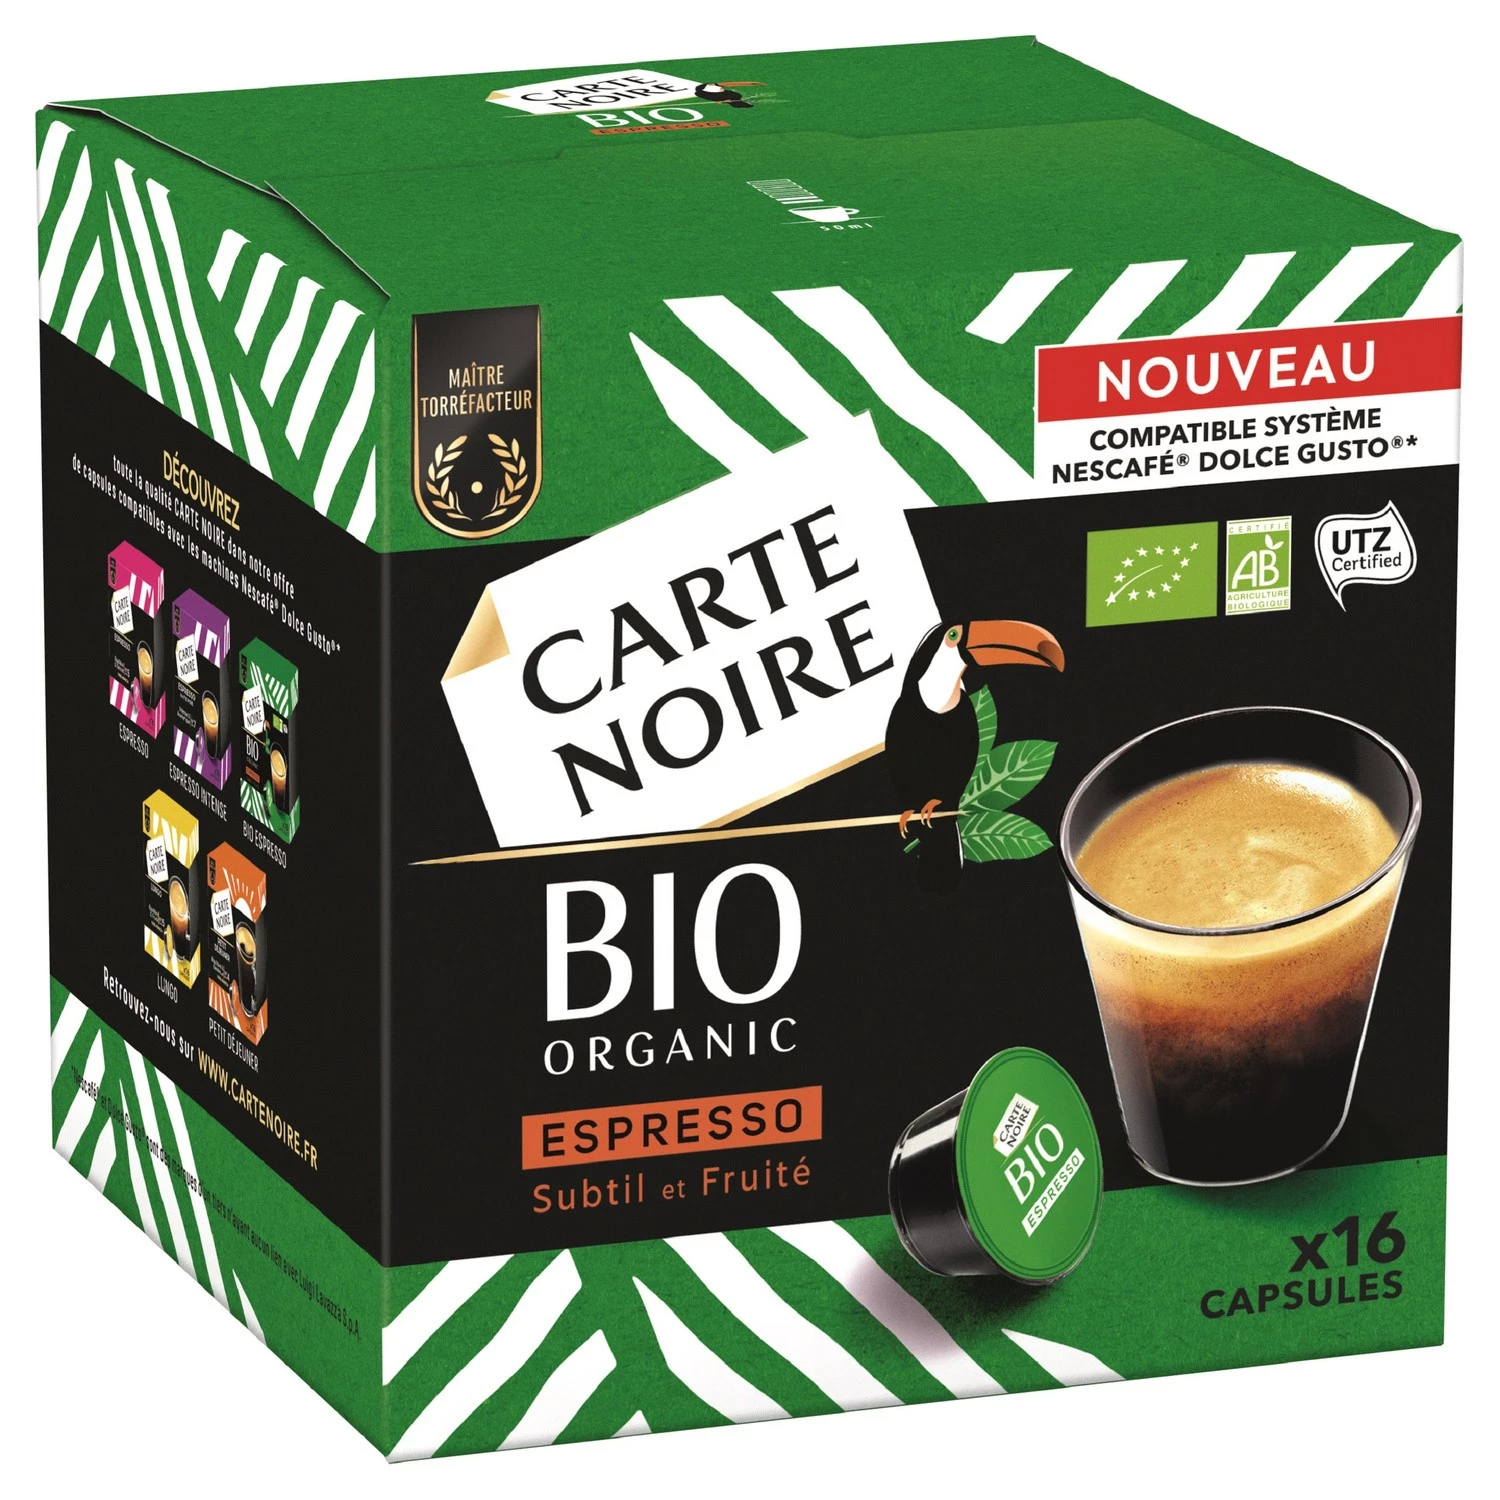 有机细腻果味浓缩咖啡 x16 粒 128g - CARTE NOIRE